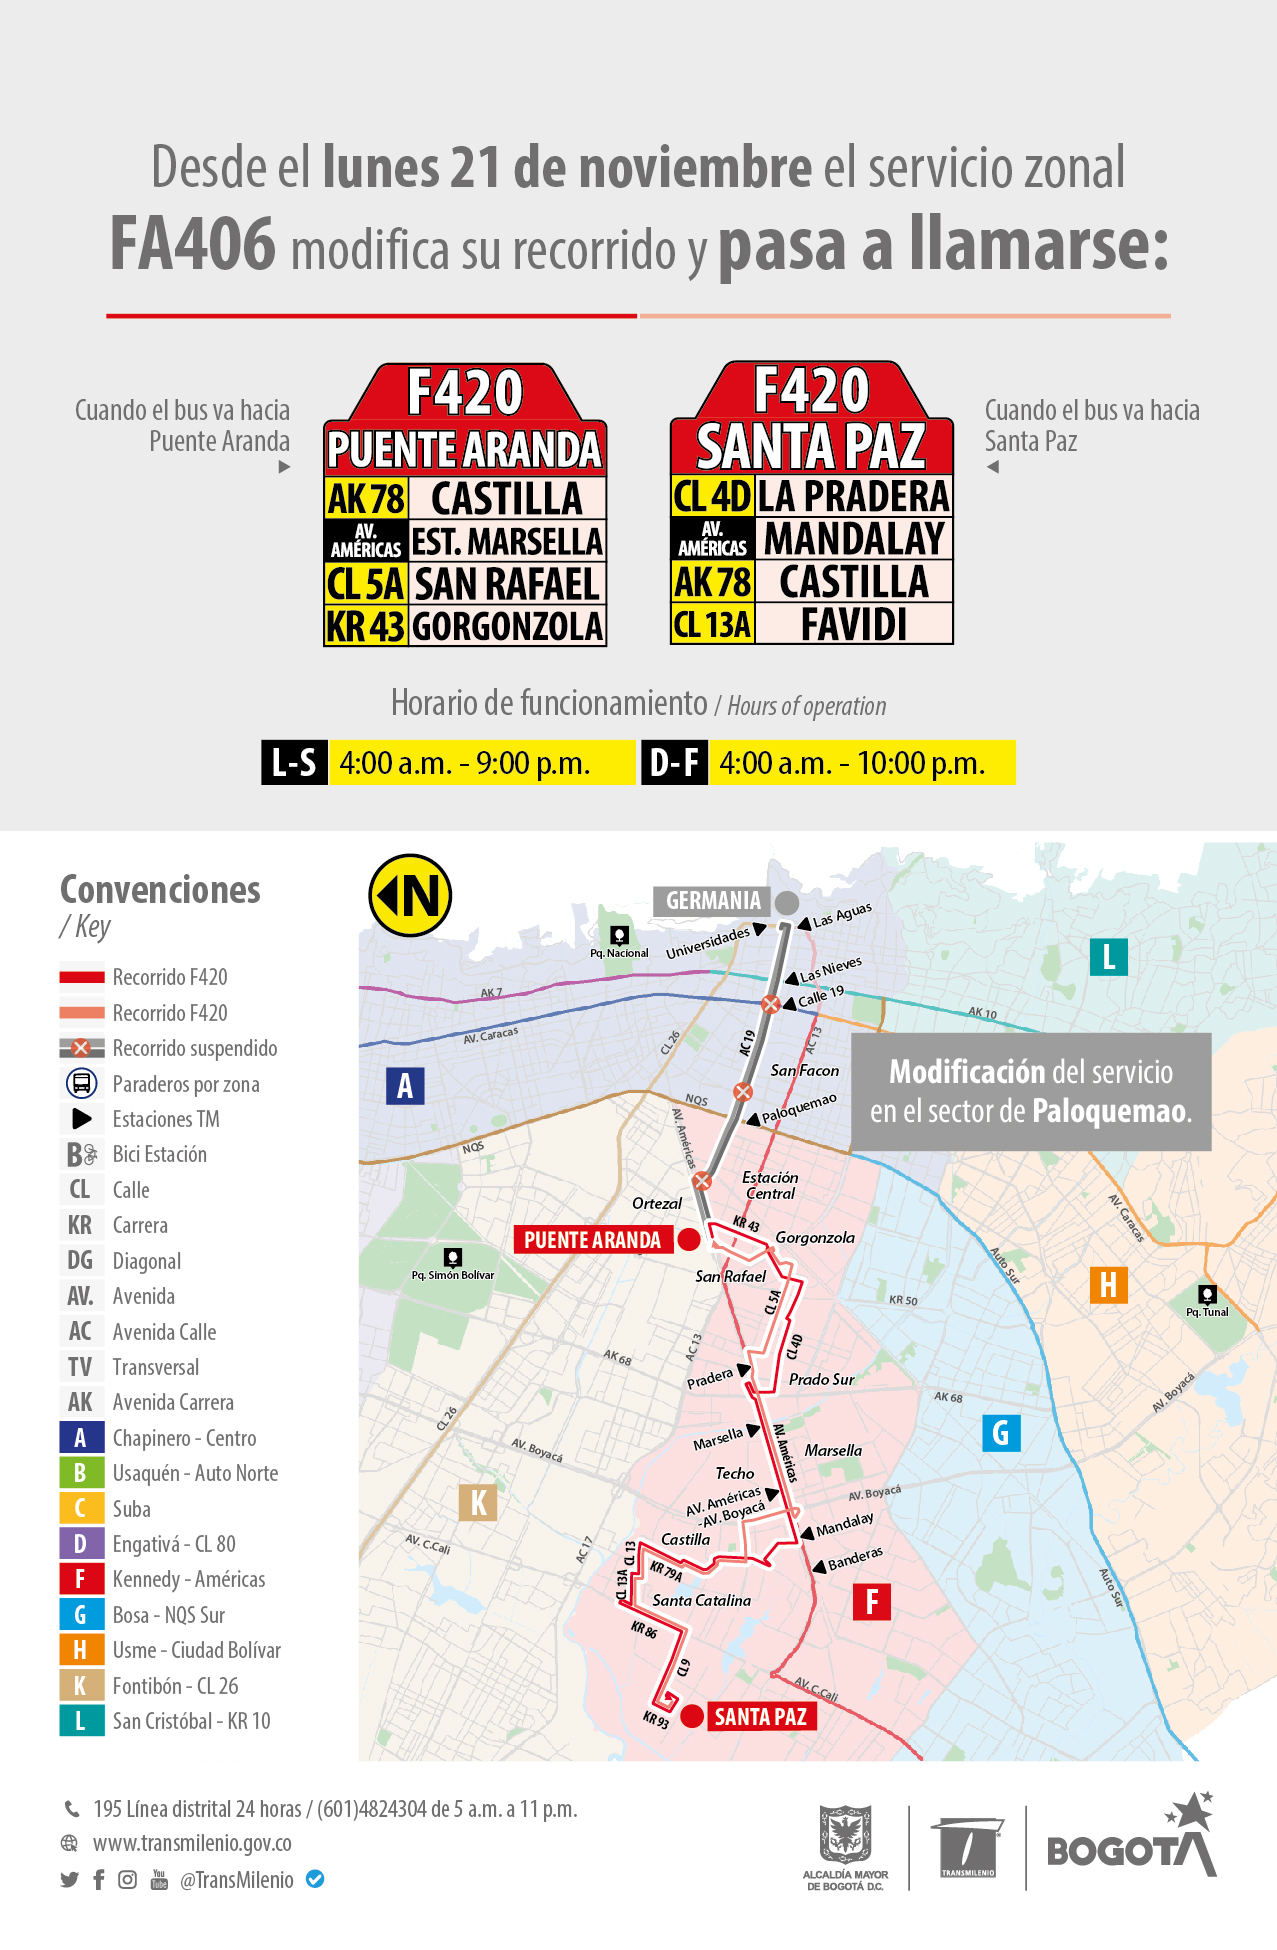 Mapa con ajuste operacional de la ruta zonal FA406, la cual, modifica su recorrido y pasa a llamarse F420 Santa Paz – F420 Puente Aranda